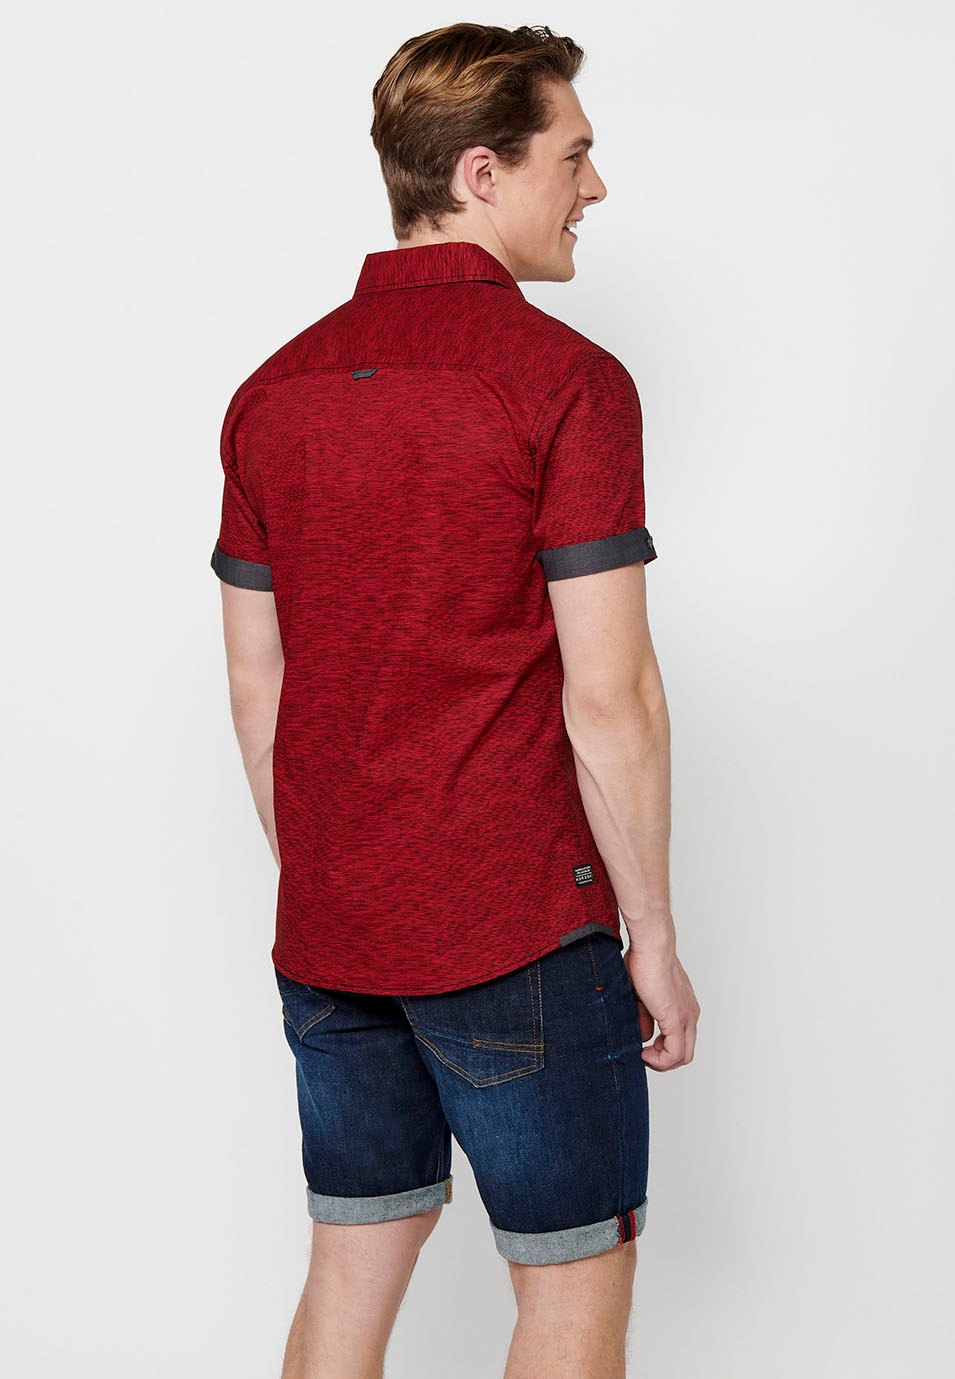 Chemise en coton à manches courtes, couleur rouge pour homme